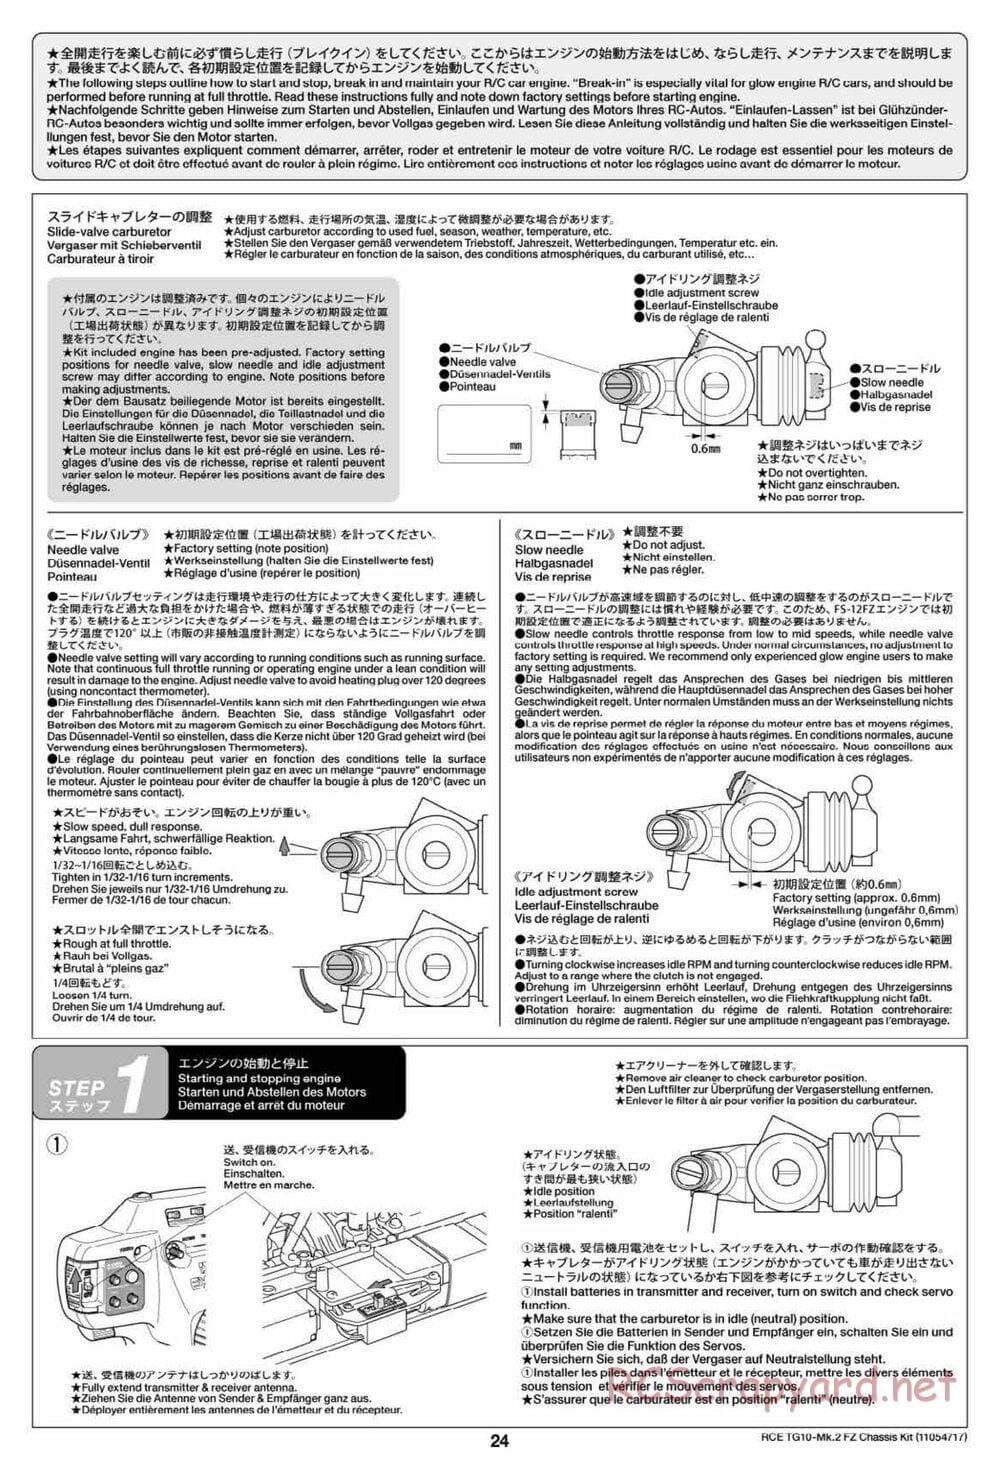 Tamiya - TG10 Mk.2 FZ Chassis - Manual - Page 24